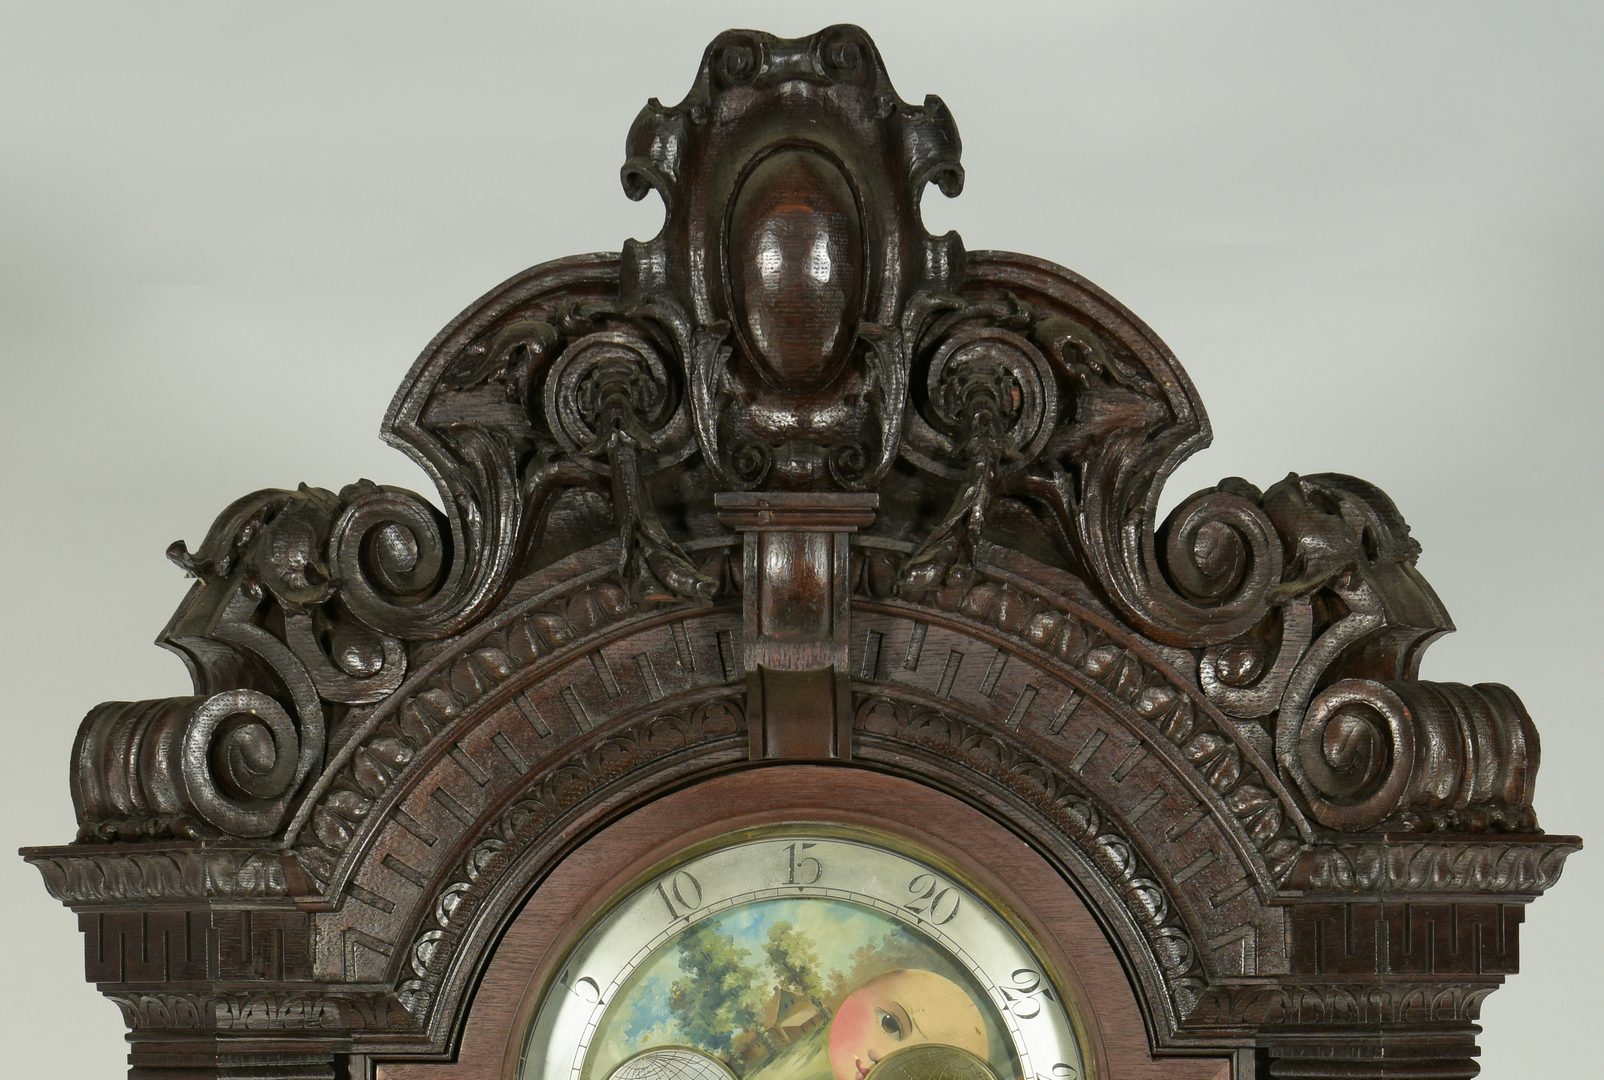 Lot 102: Tiffany Tall Case Clock w/ Carved Oak Case